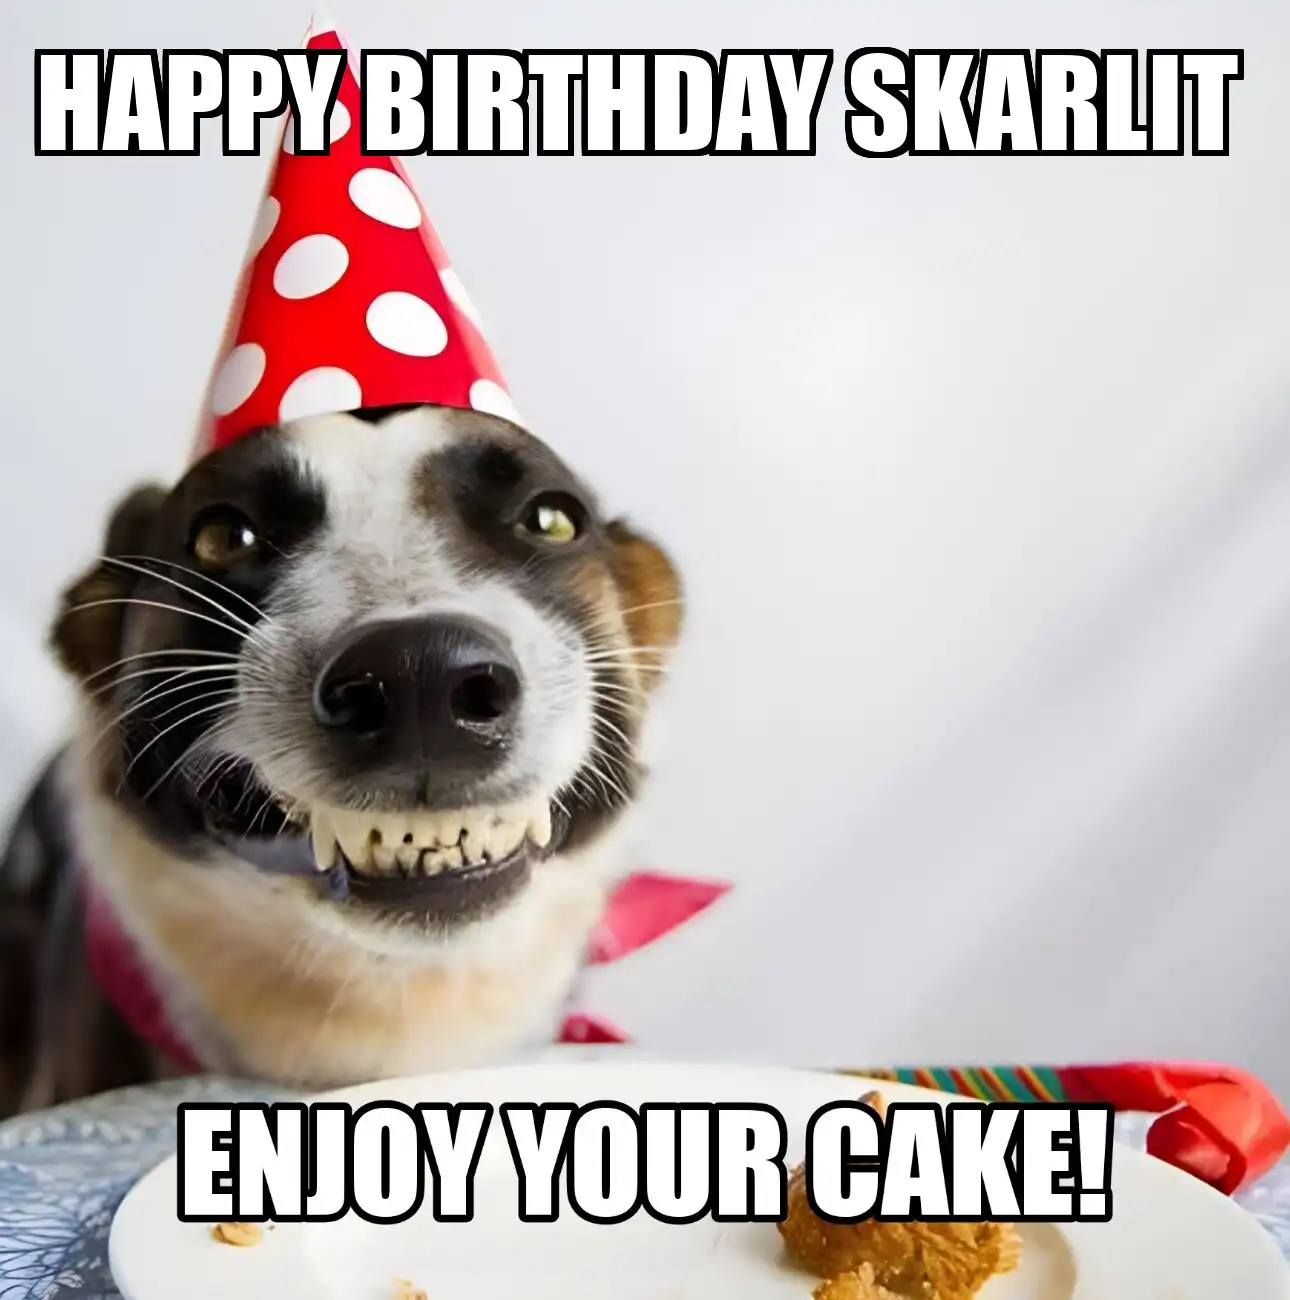 Happy Birthday Skarlit Enjoy Your Cake Dog Meme